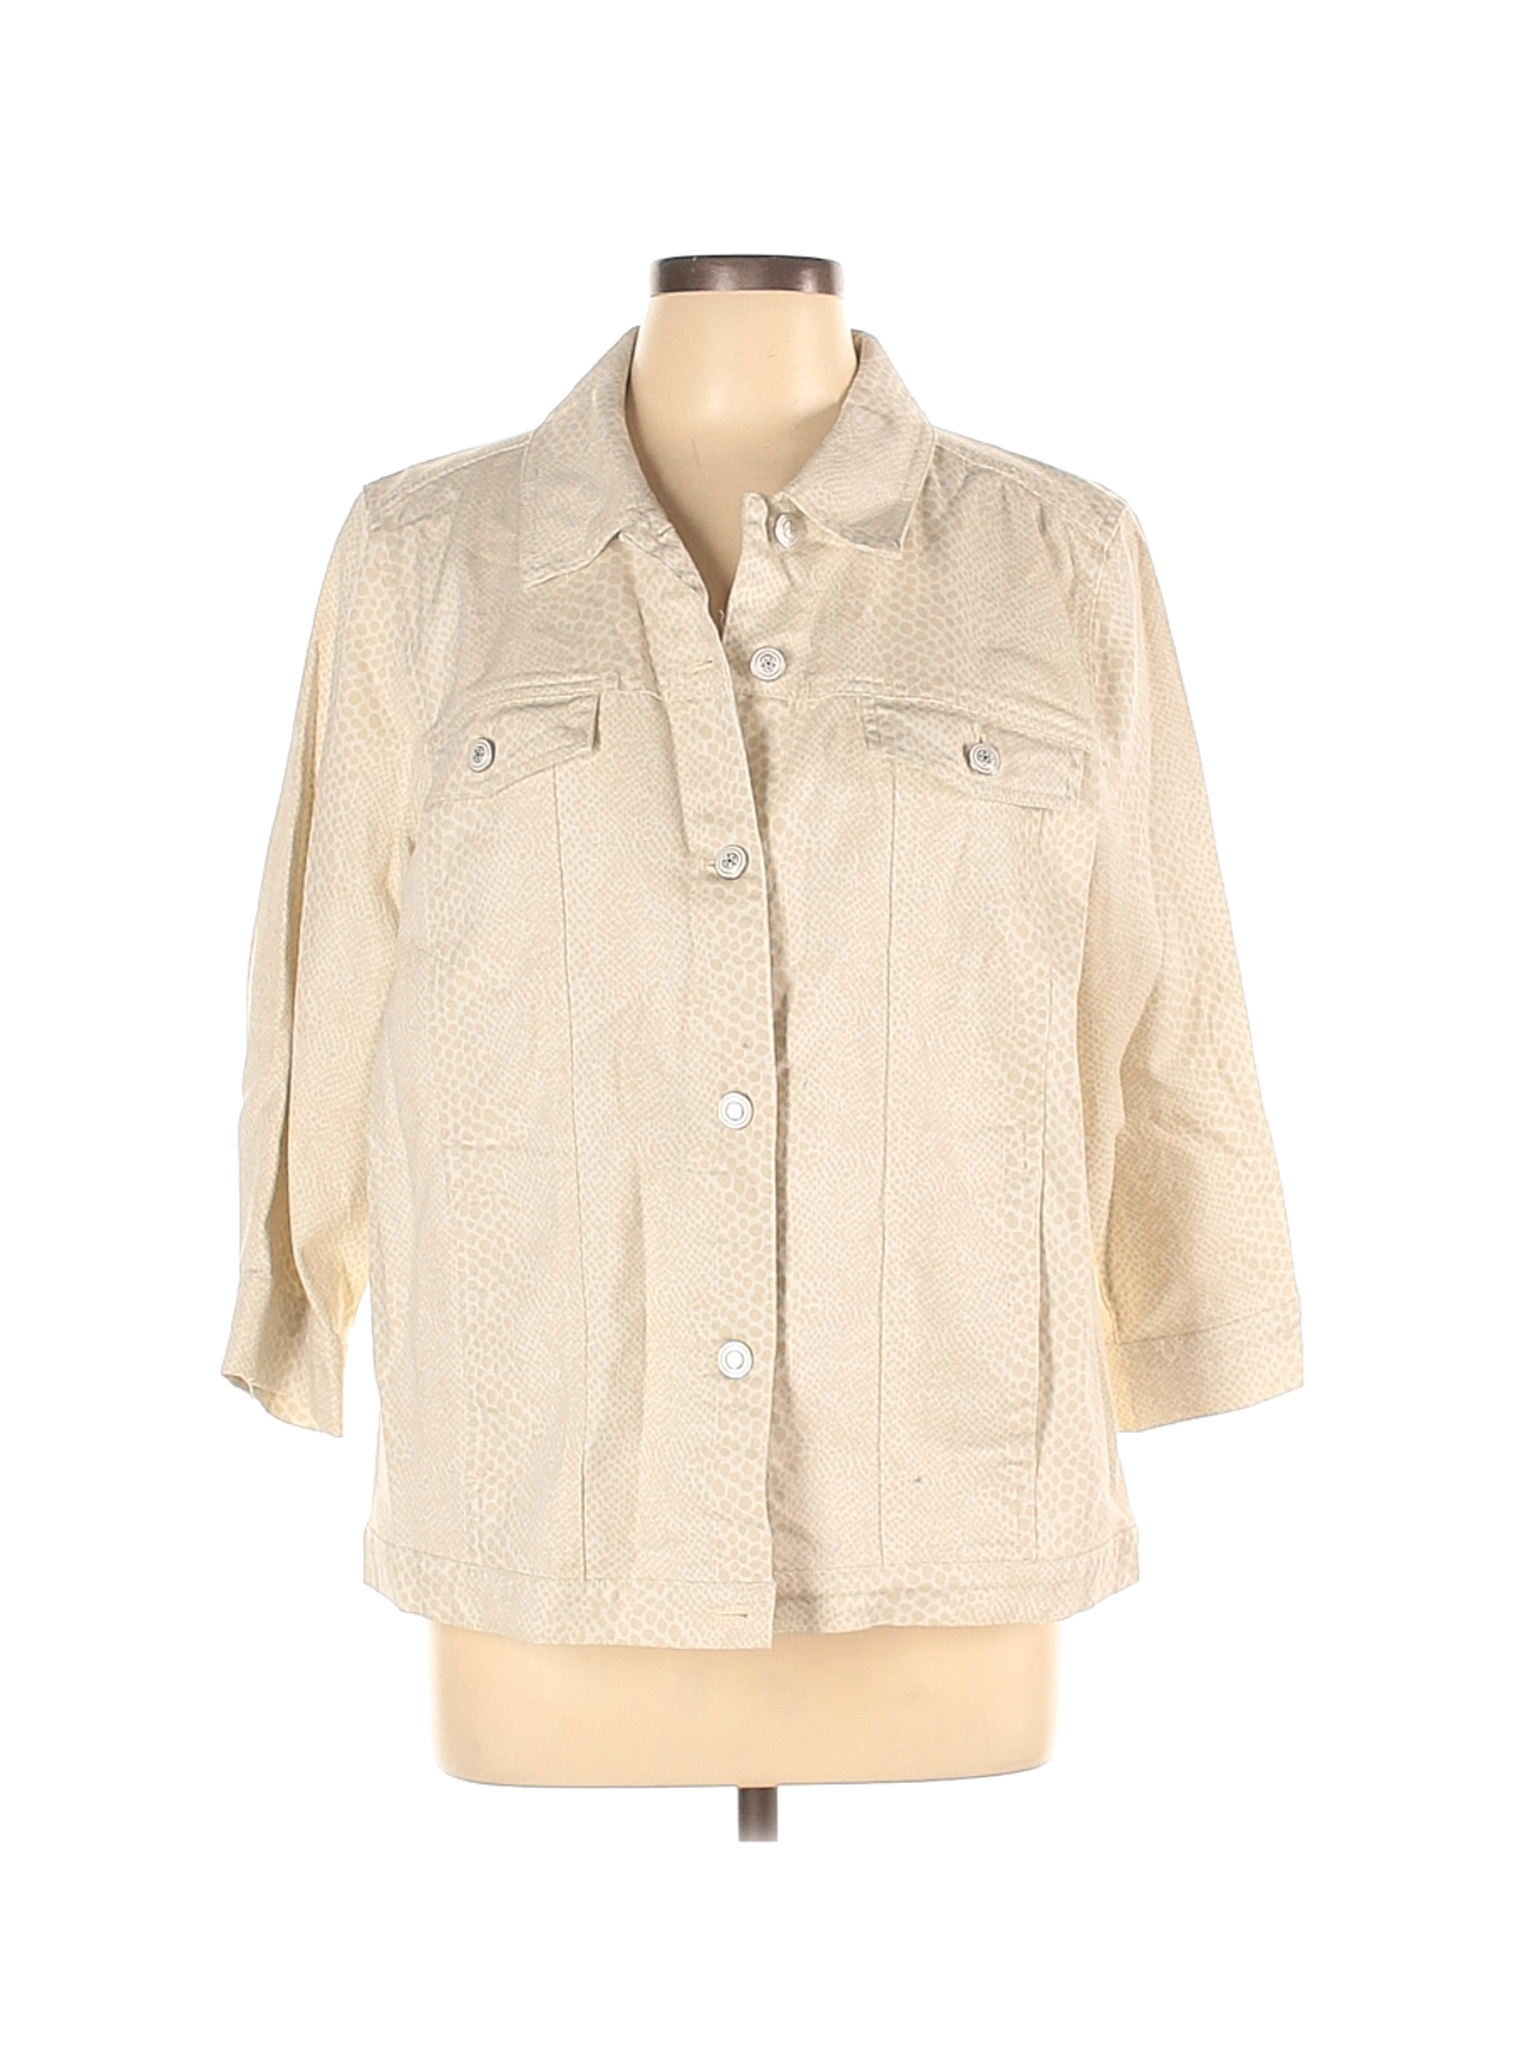 D&Co. Women Brown Denim Jacket L | eBay